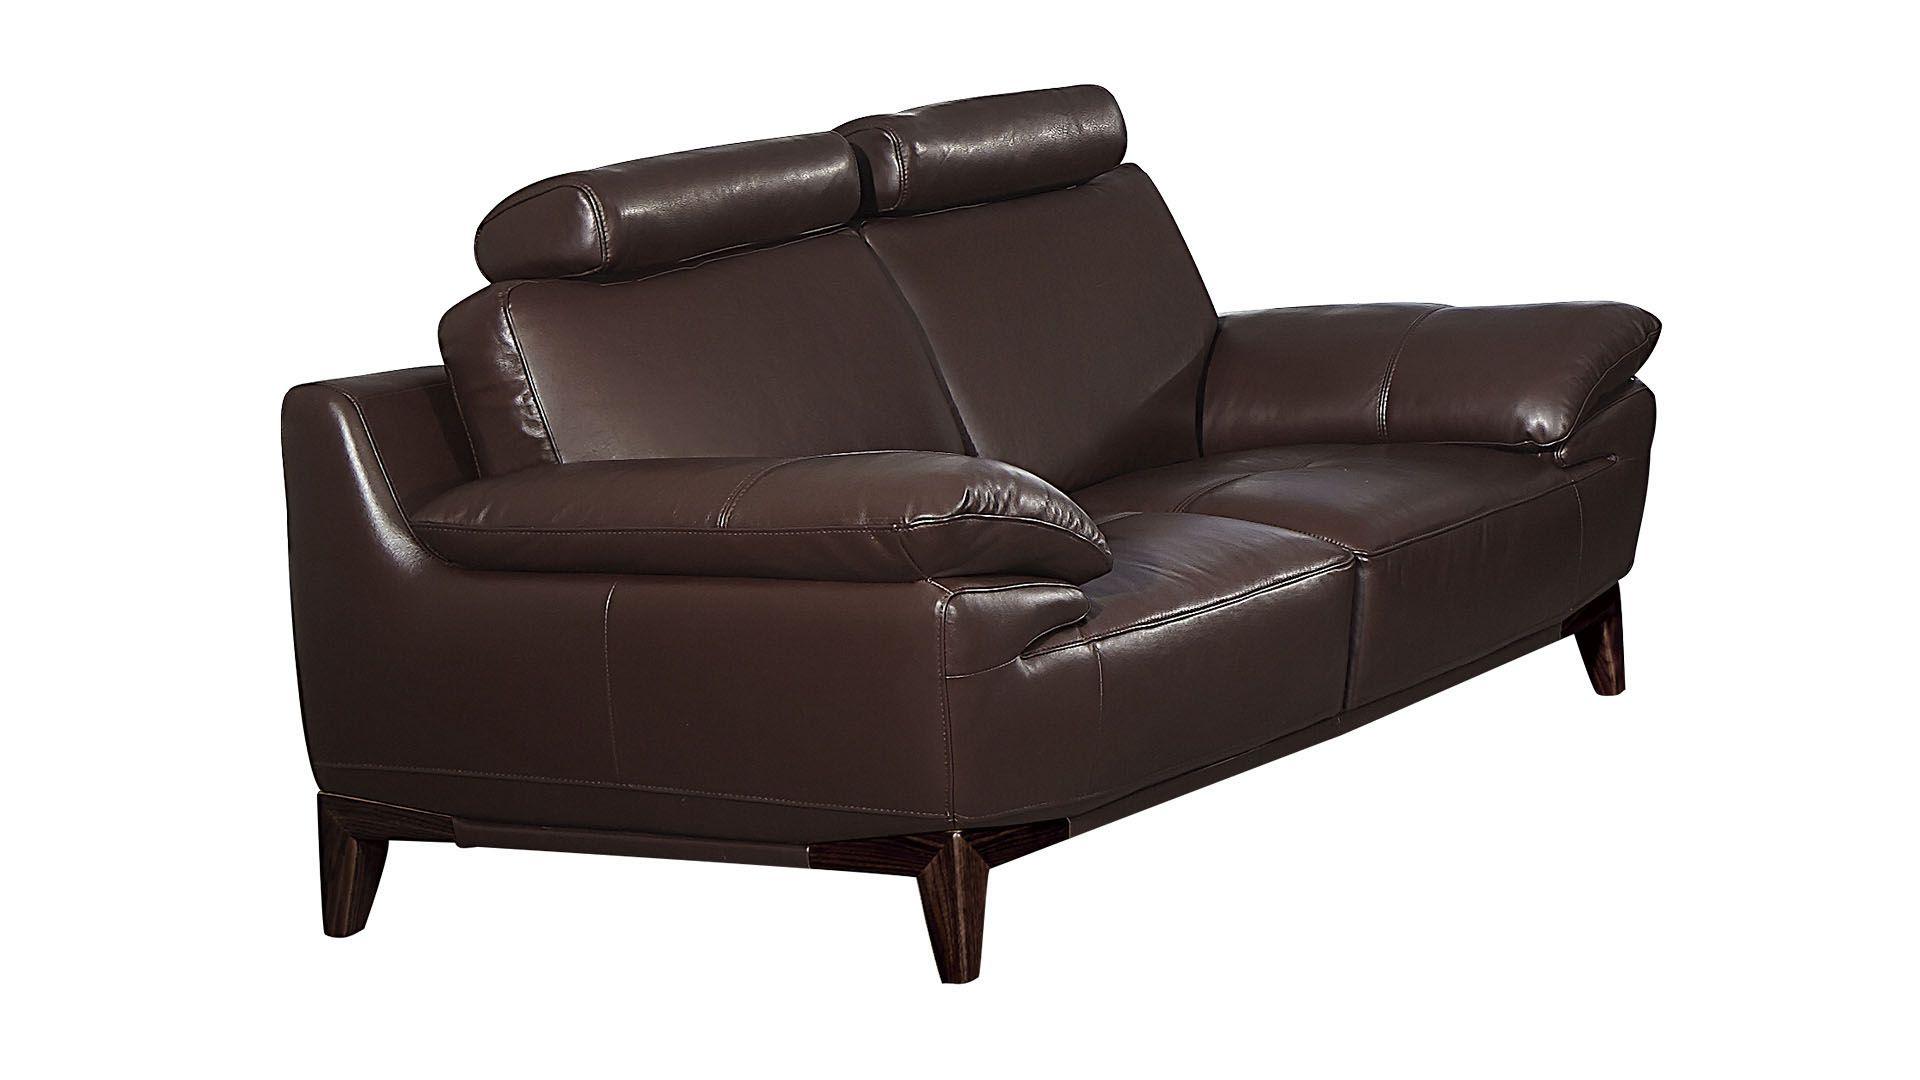 Contemporary, Modern Loveseat EK028-DC-LS EK028-DC-LS in Dark Brown Top grain leather